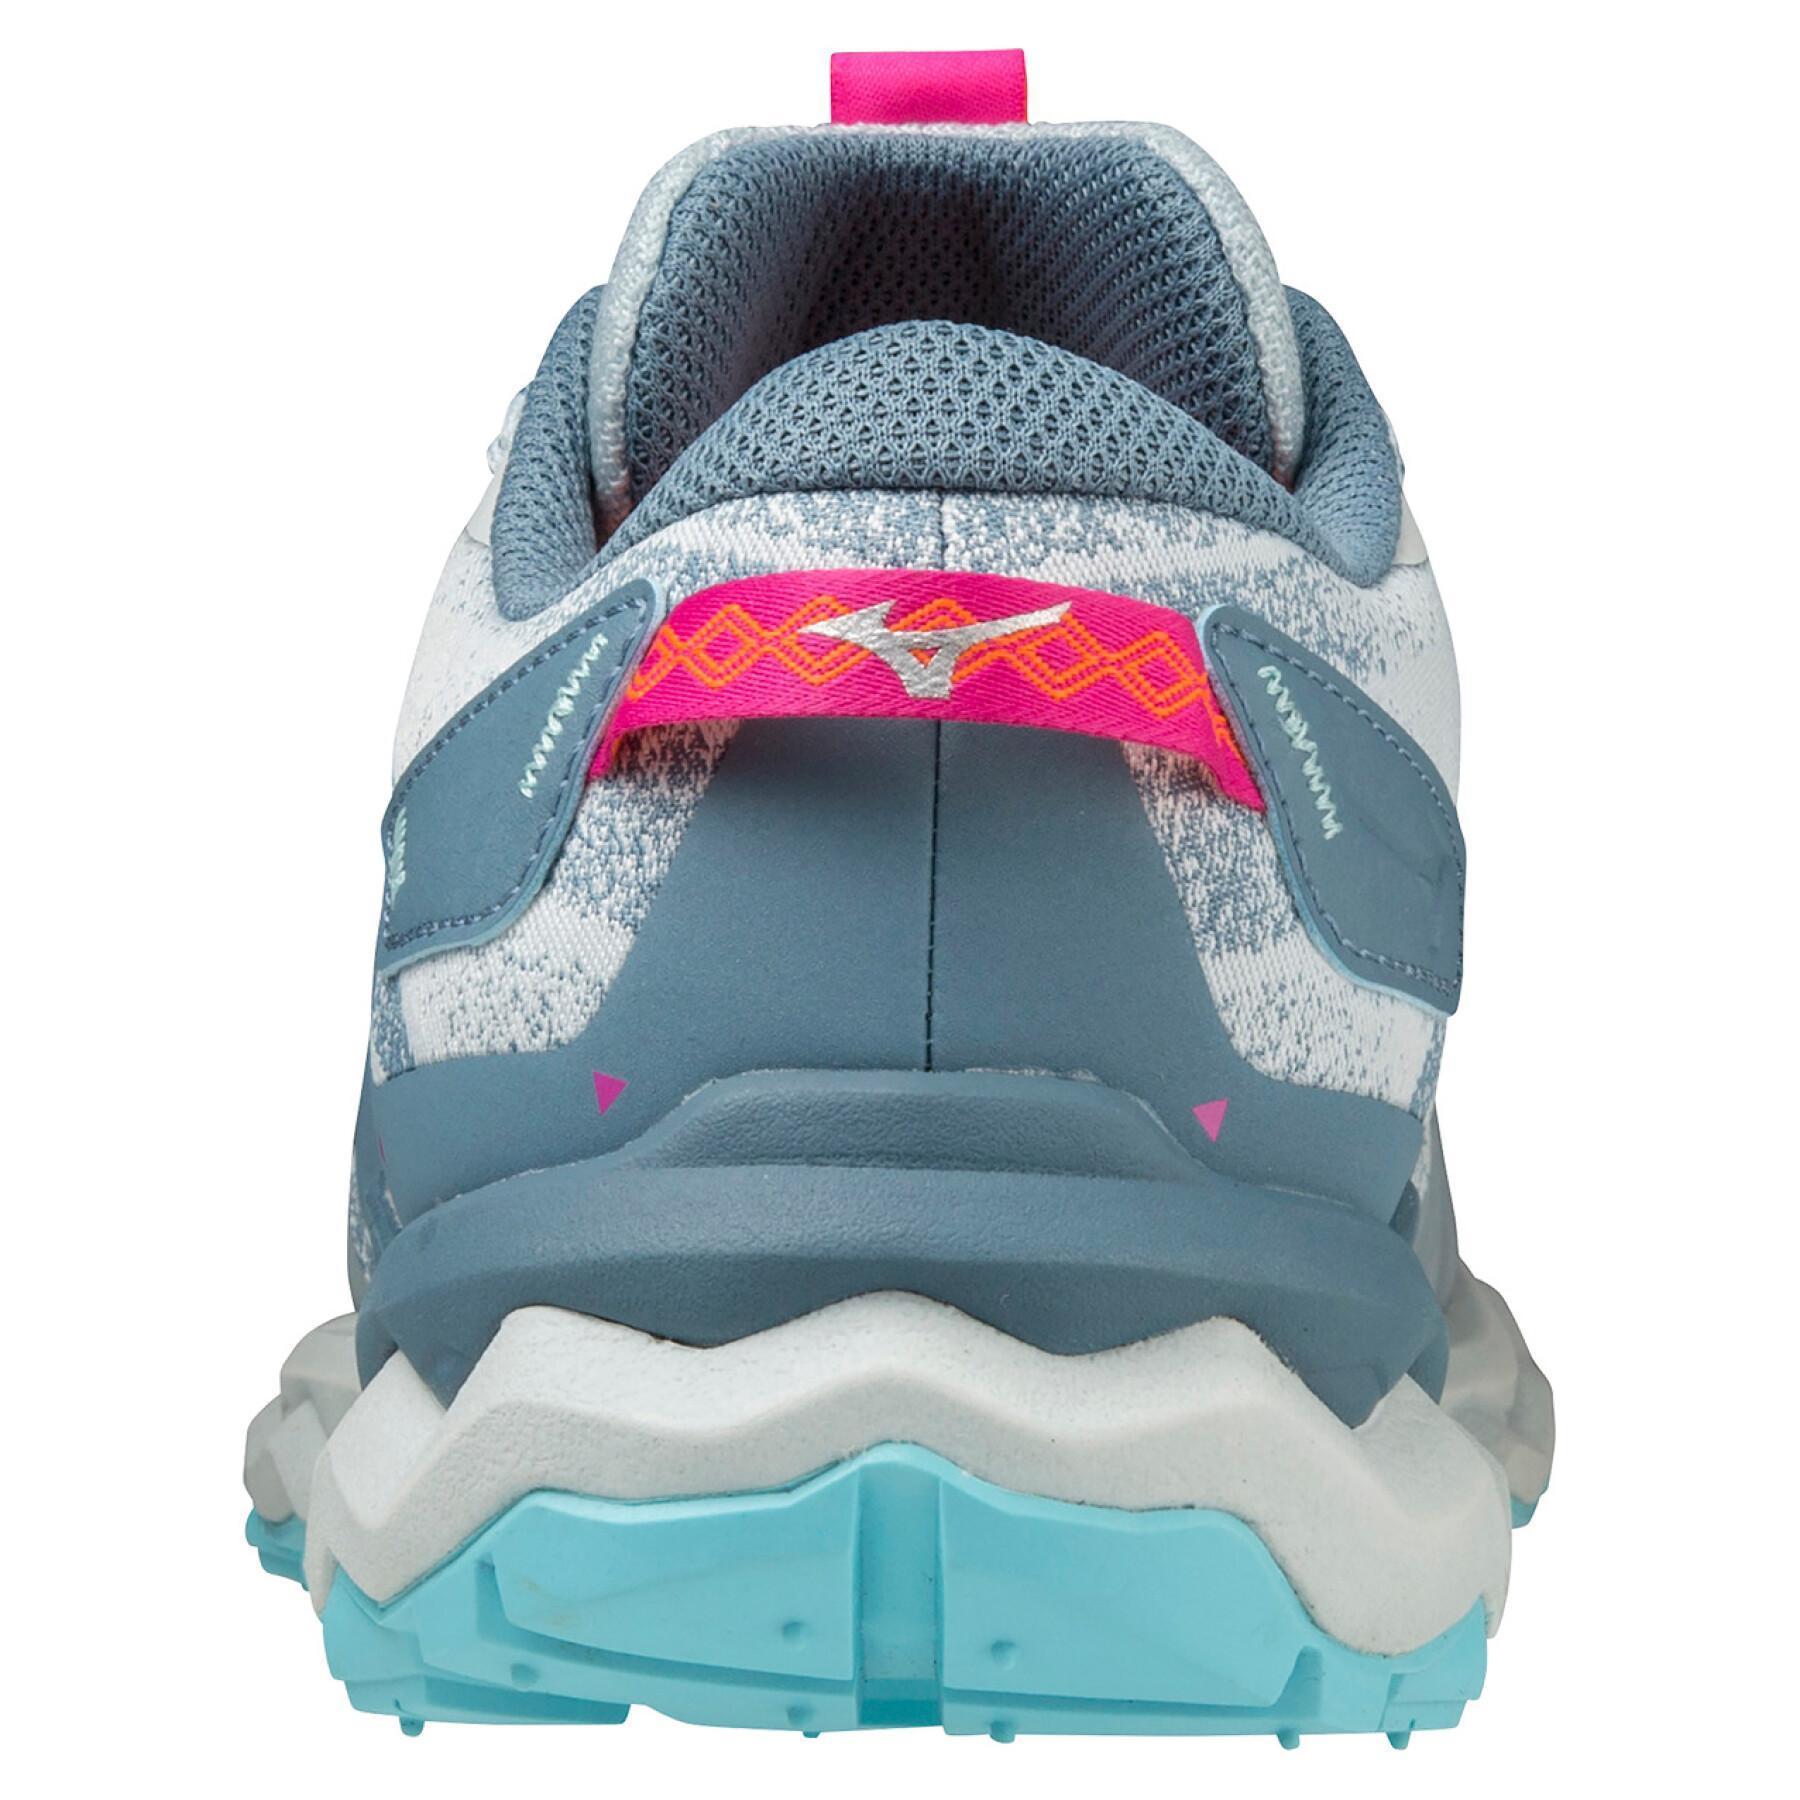 Trailrunning-Schuhe für Frauen Mizuno Wave Daichi 7